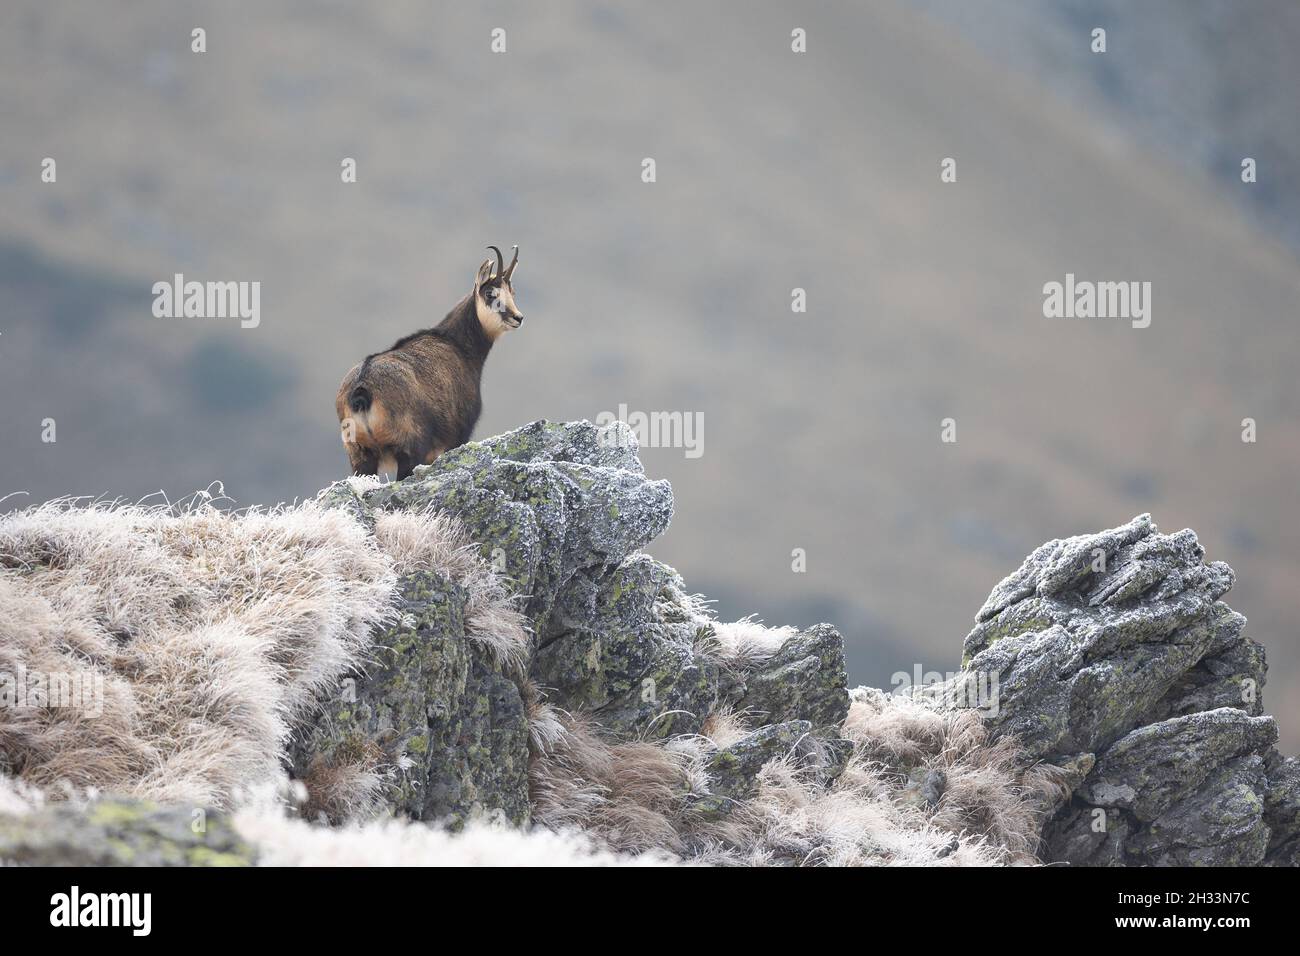 Chamoise Goat rupicapra rupicapra steht auf einer Klippe und blickt auf die Kamera karpaten-Gämsen in natürlichem Lebensraum Stockfoto